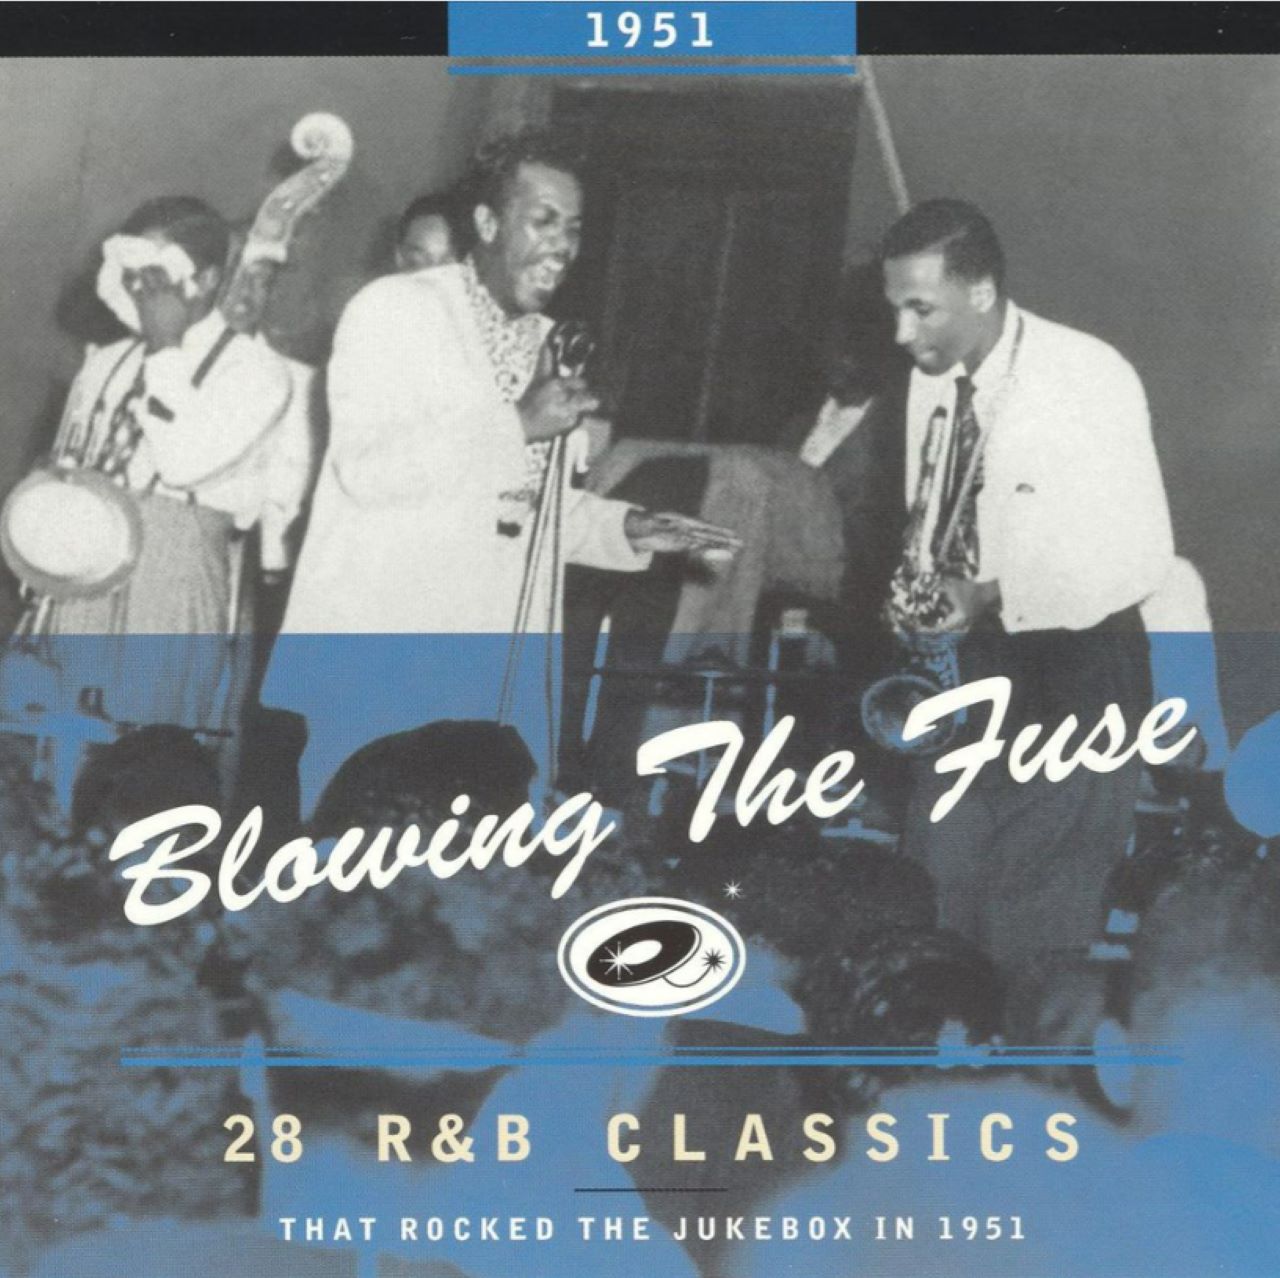 Recensione album A.A.V.V. – “Blowing The Fuse - R&B Classics” a cura di Maurizio Maiotti, fonte Jamboree n. 48, 2005